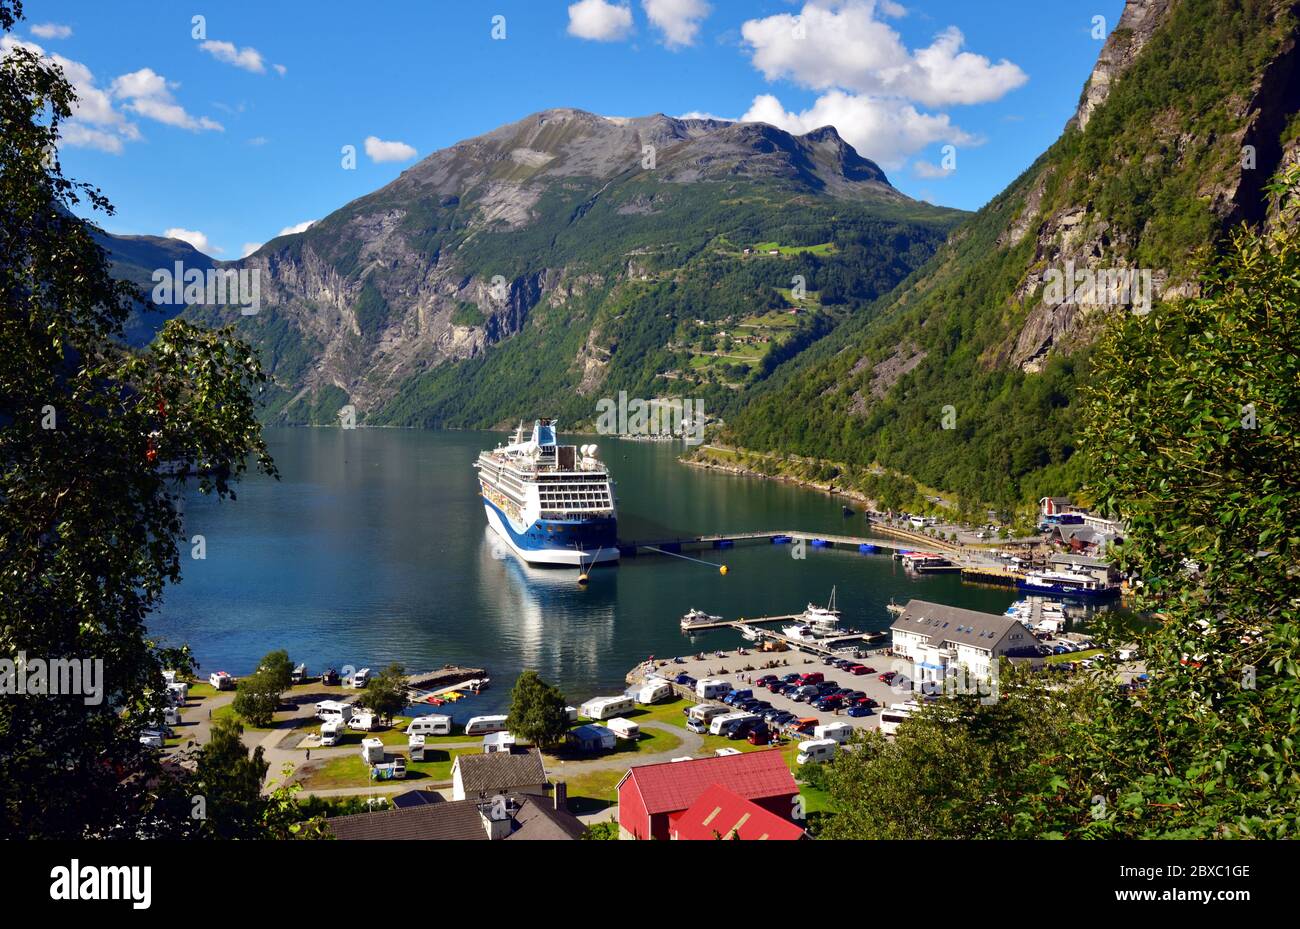 Le terminal de croisière de Geiranger, en Norvège, avec le bateau de croisière TUI Marella Discovery amarré à côté. Banque D'Images